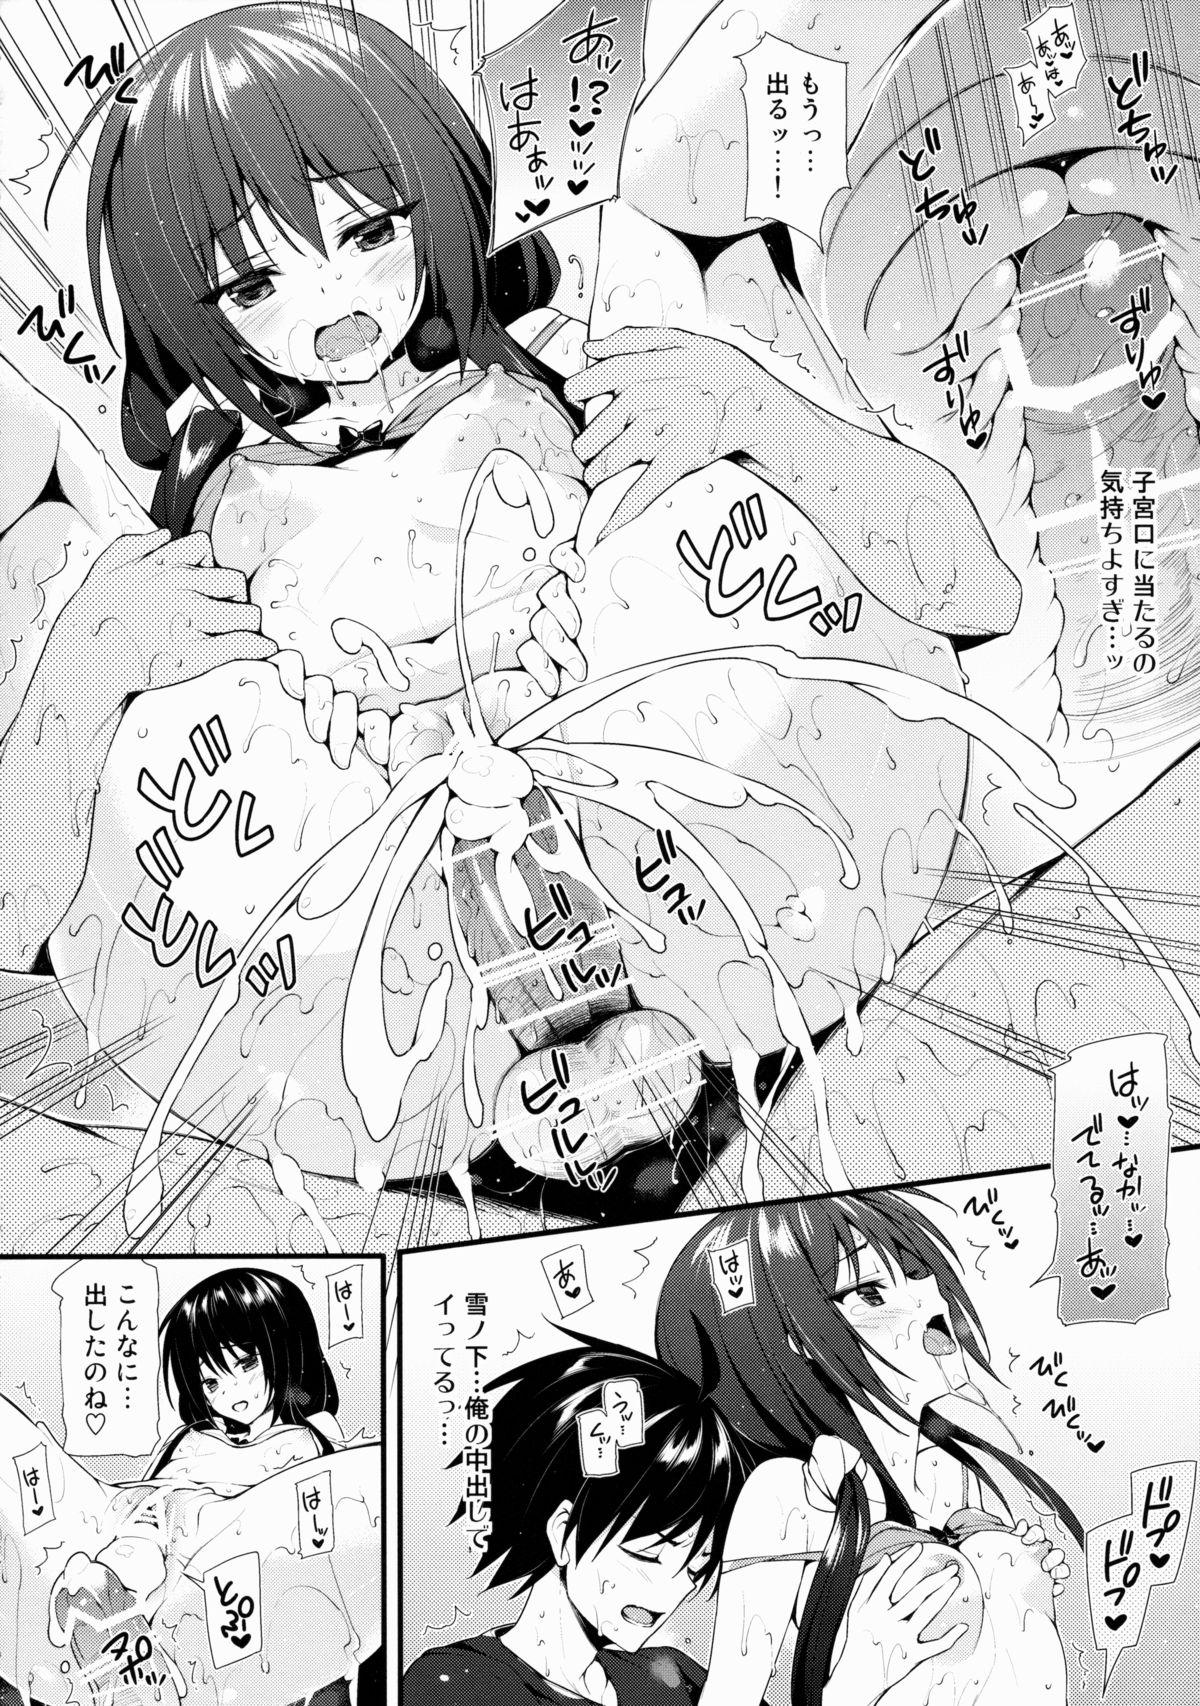 Tiny Tits Harunon to Himatsubushi - Yahari ore no seishun love come wa machigatteiru Tattooed - Page 3